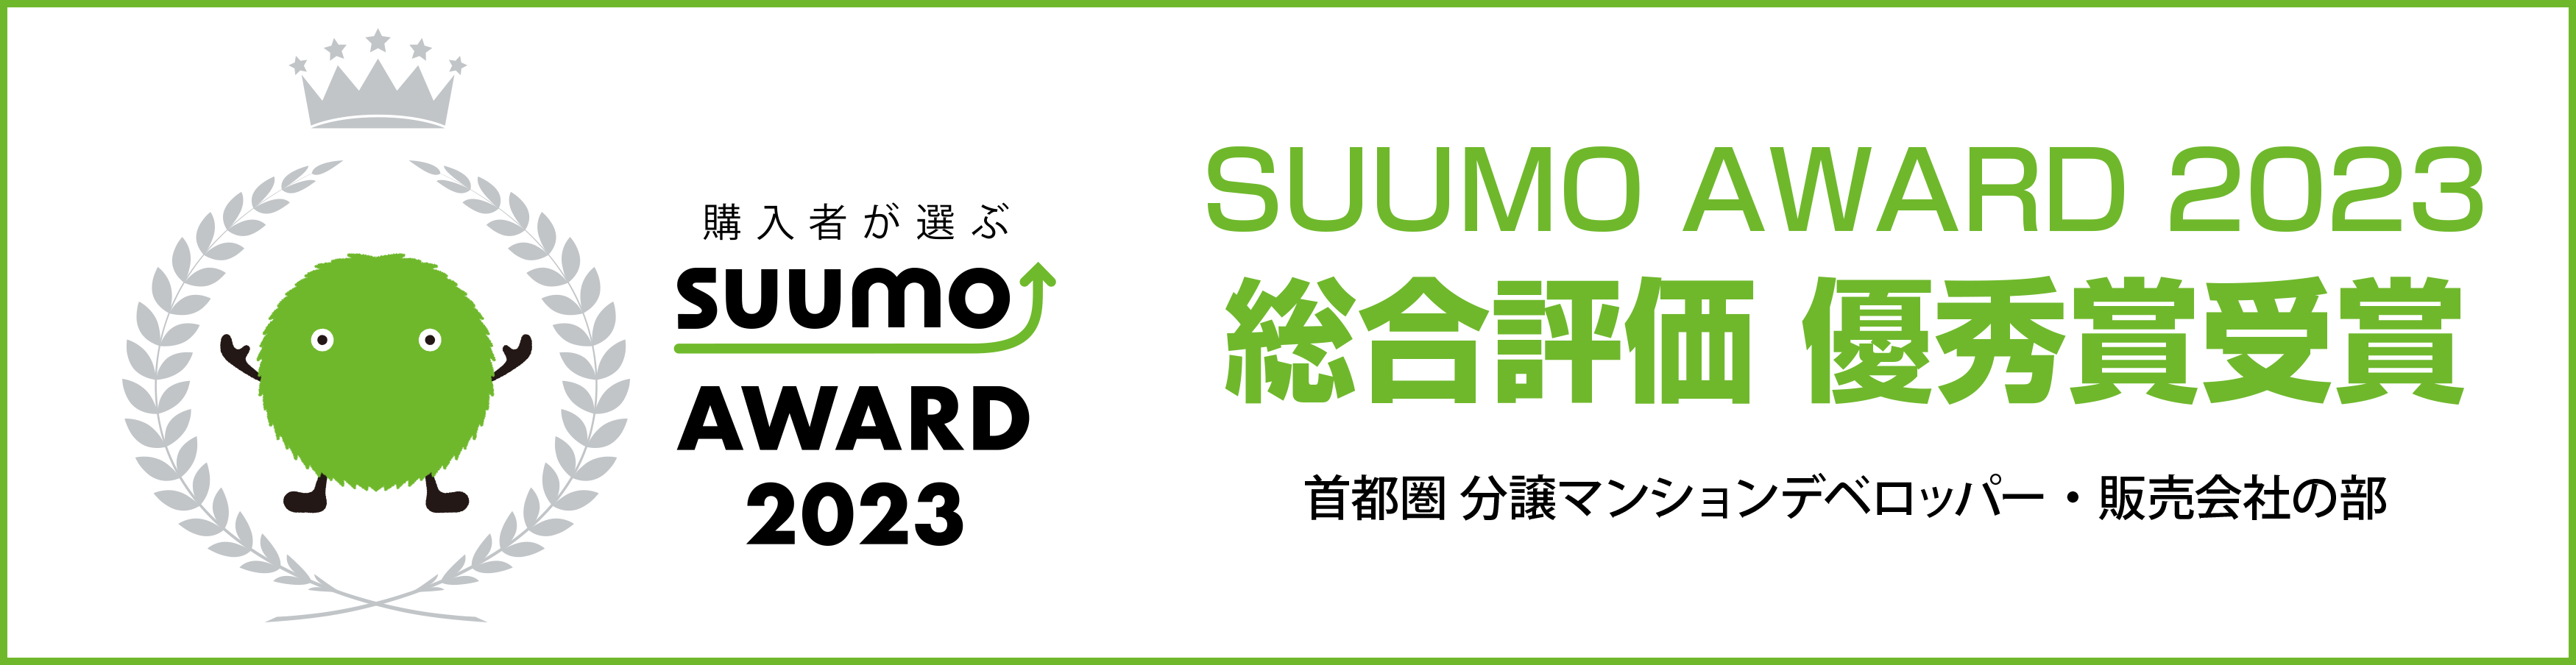 SUUMO AWARD